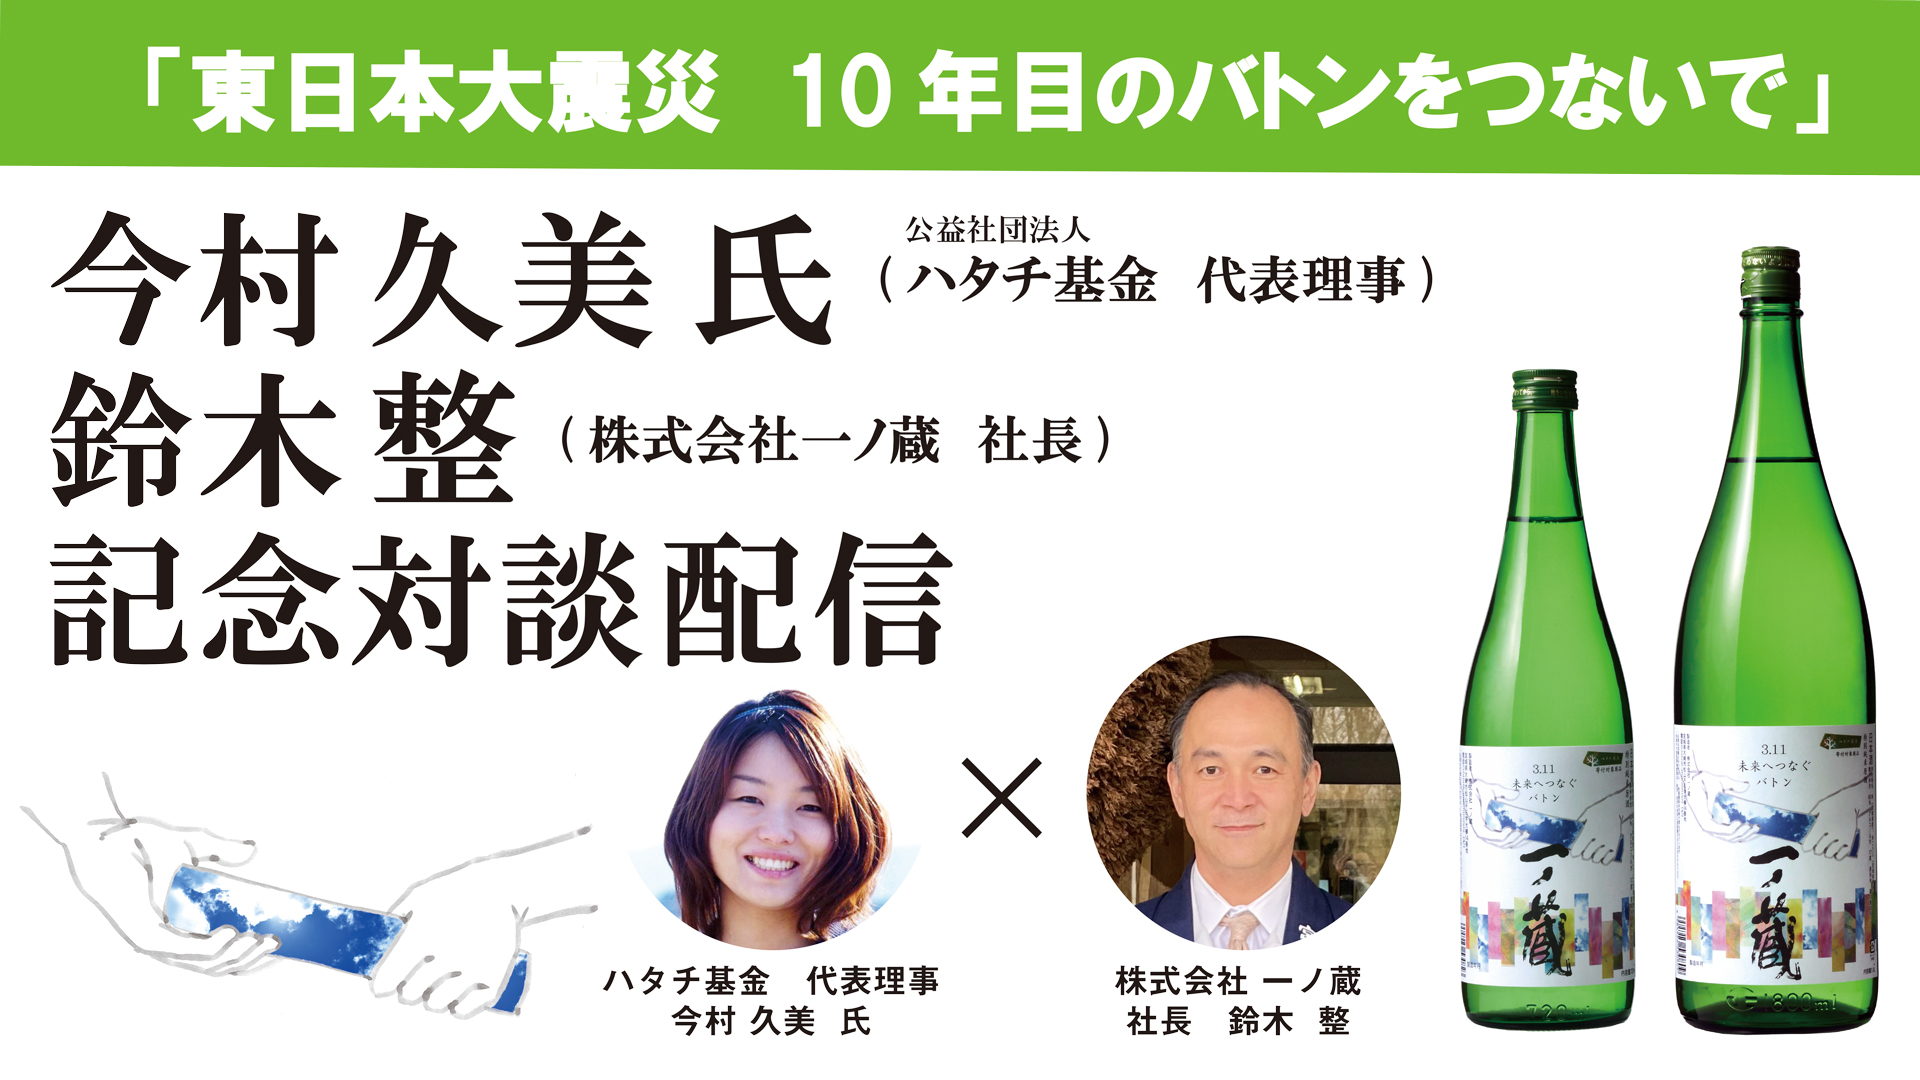 「一ノ蔵　3.11未来バトン酒東日本大震災から10年バトンをつないで」～ハタチ基金代表理事今村久美氏との対談～